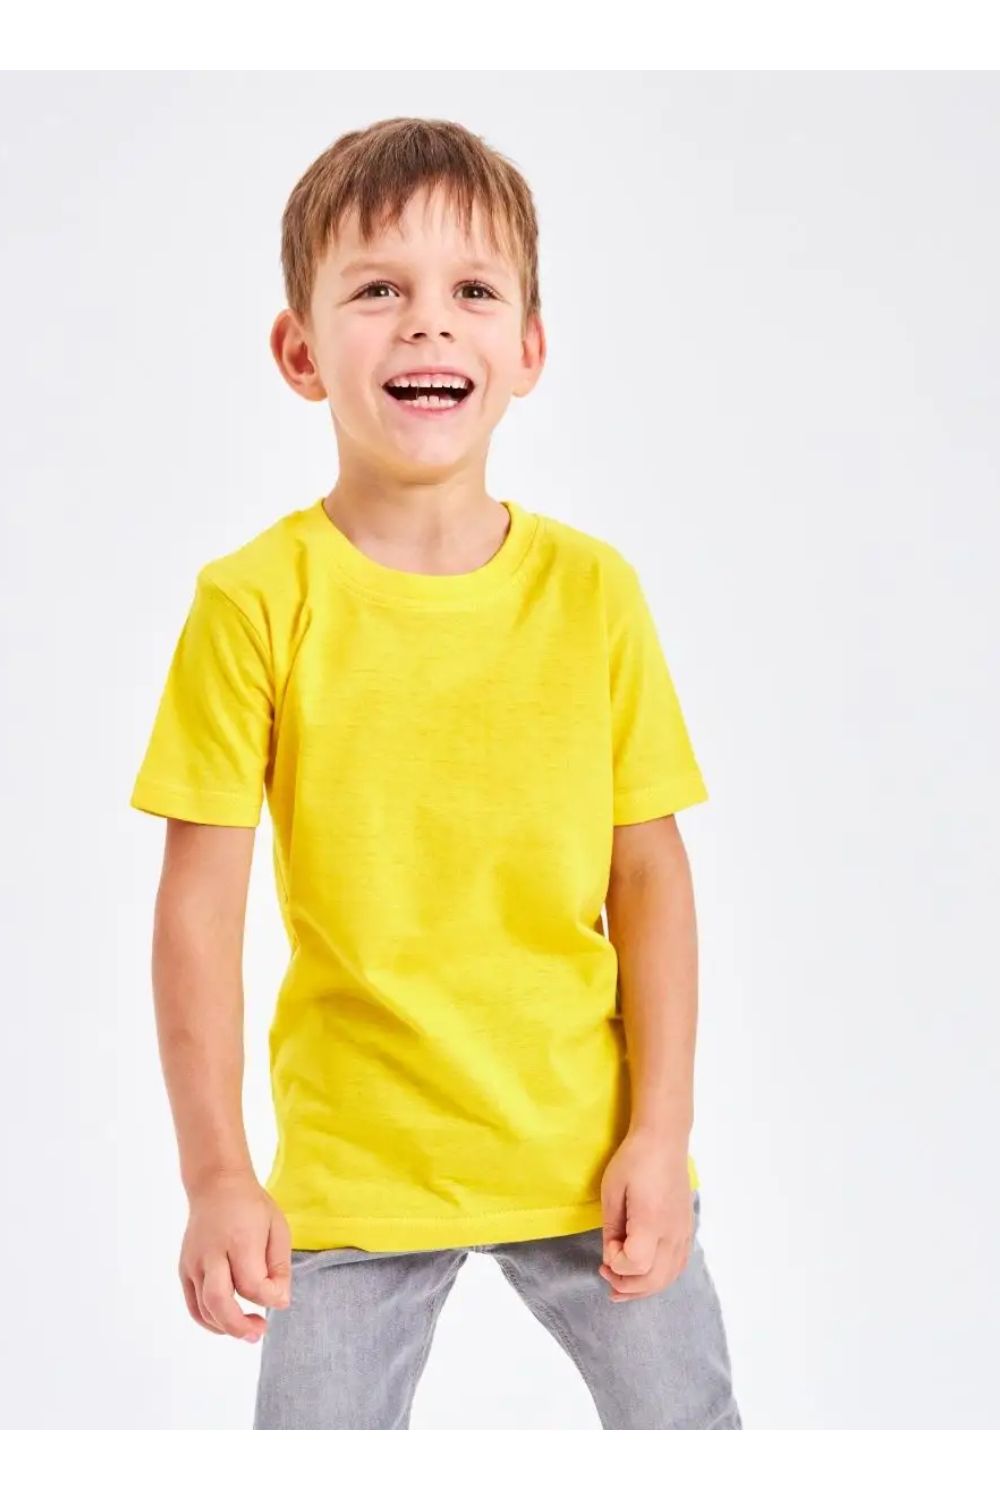 7453 футболка детская однотонная - желтый